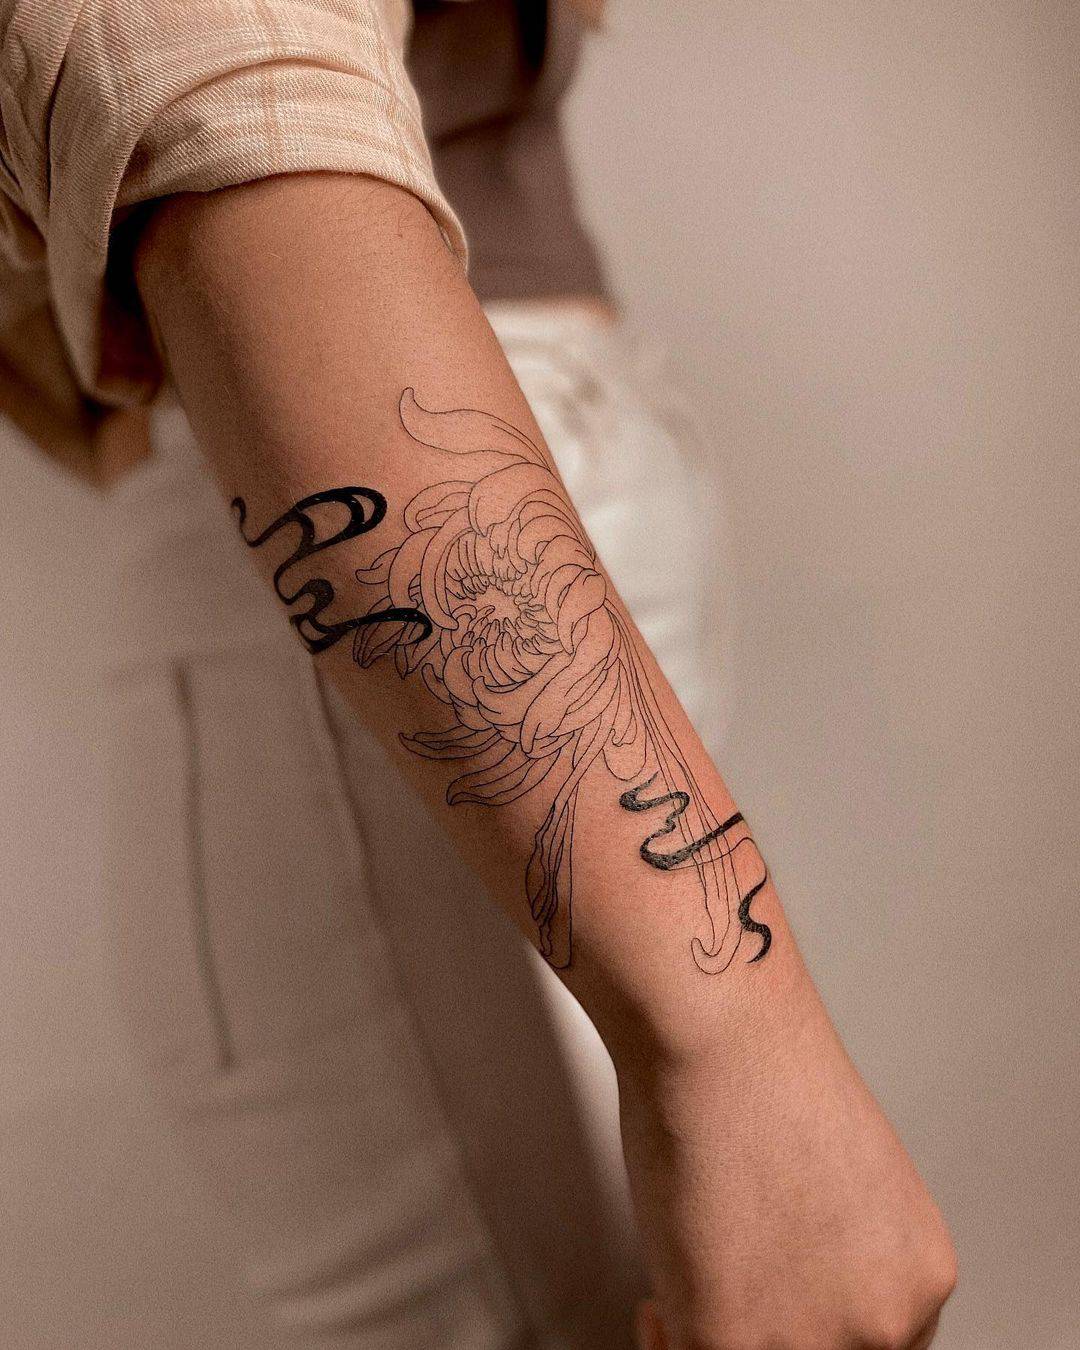 Beautiful flower tattoo on arm sleeve nu junkie oriental